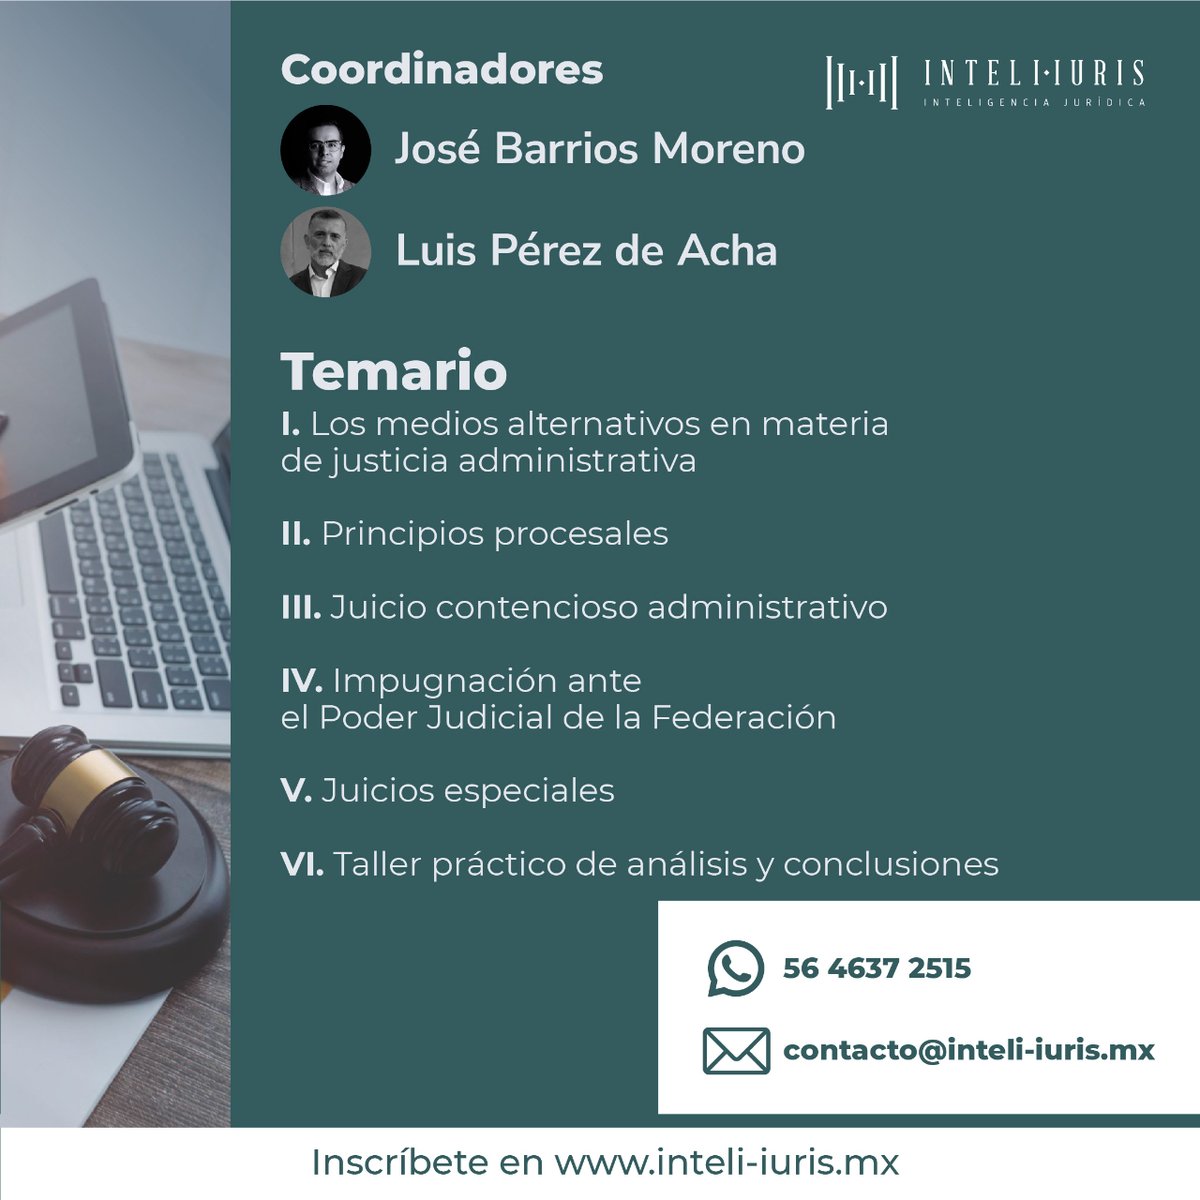 🔍 ¿Quieres aprender más del juicio contencioso administrativo? Próximamente tendremos un curso disponible para ti en Inteli-Iuris coordinado por José Barrios Moreno y Luis Pérez de Acha📚.